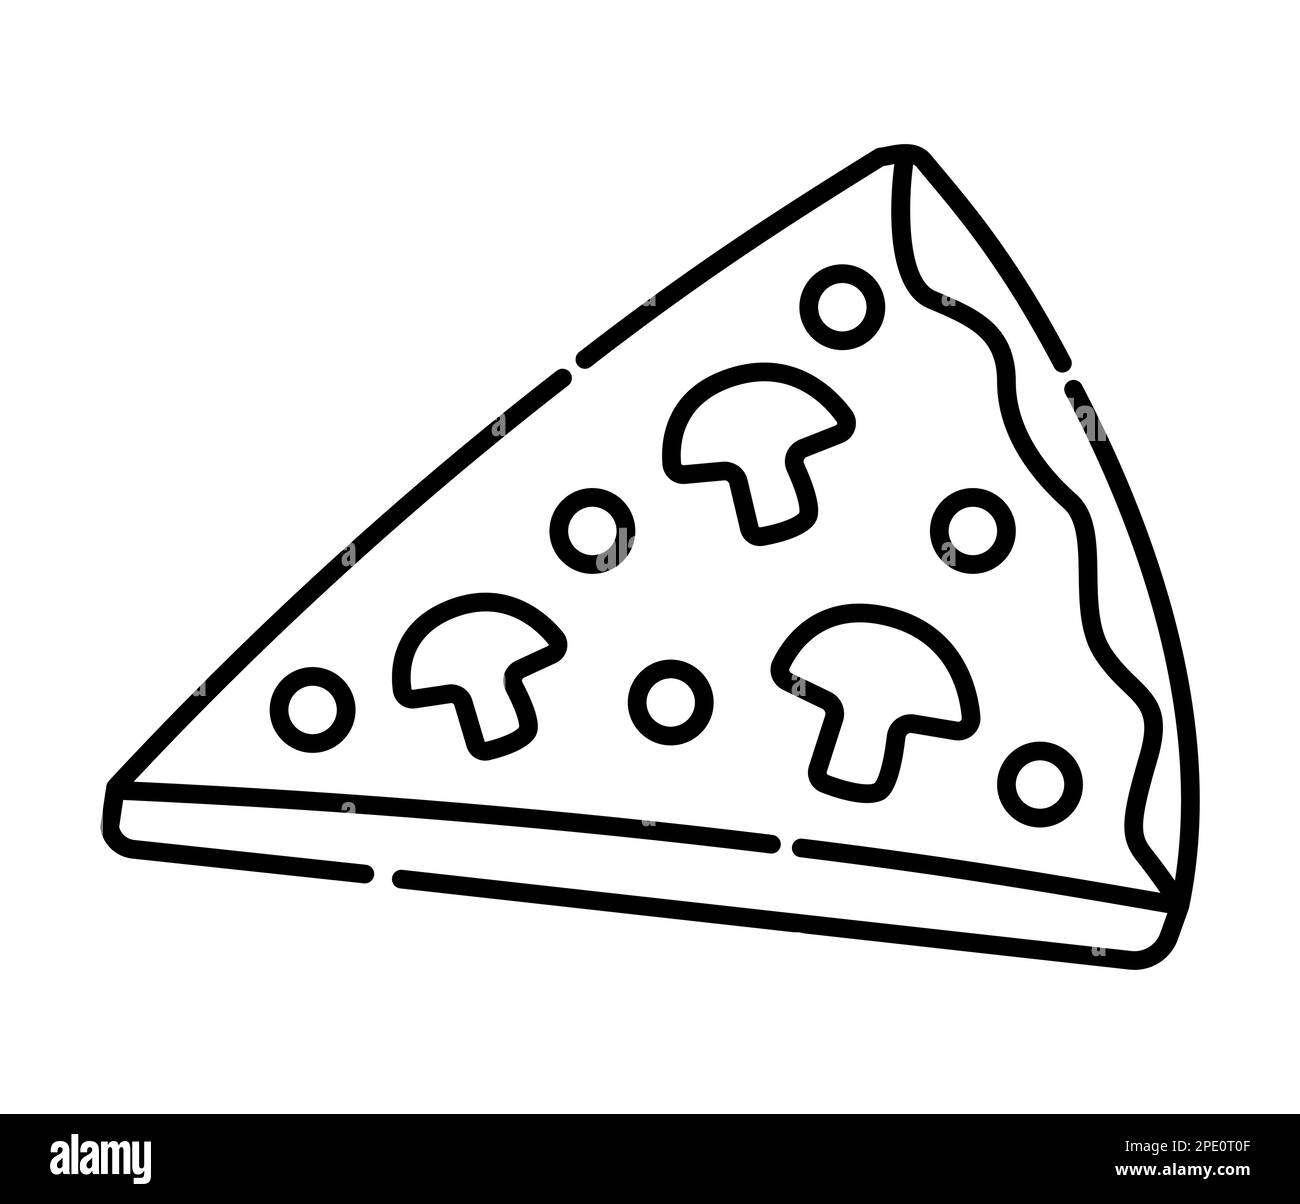 Schwarze und weiße Vektorlinien-Abbildung für ein Stück Pizza Stock Vektor